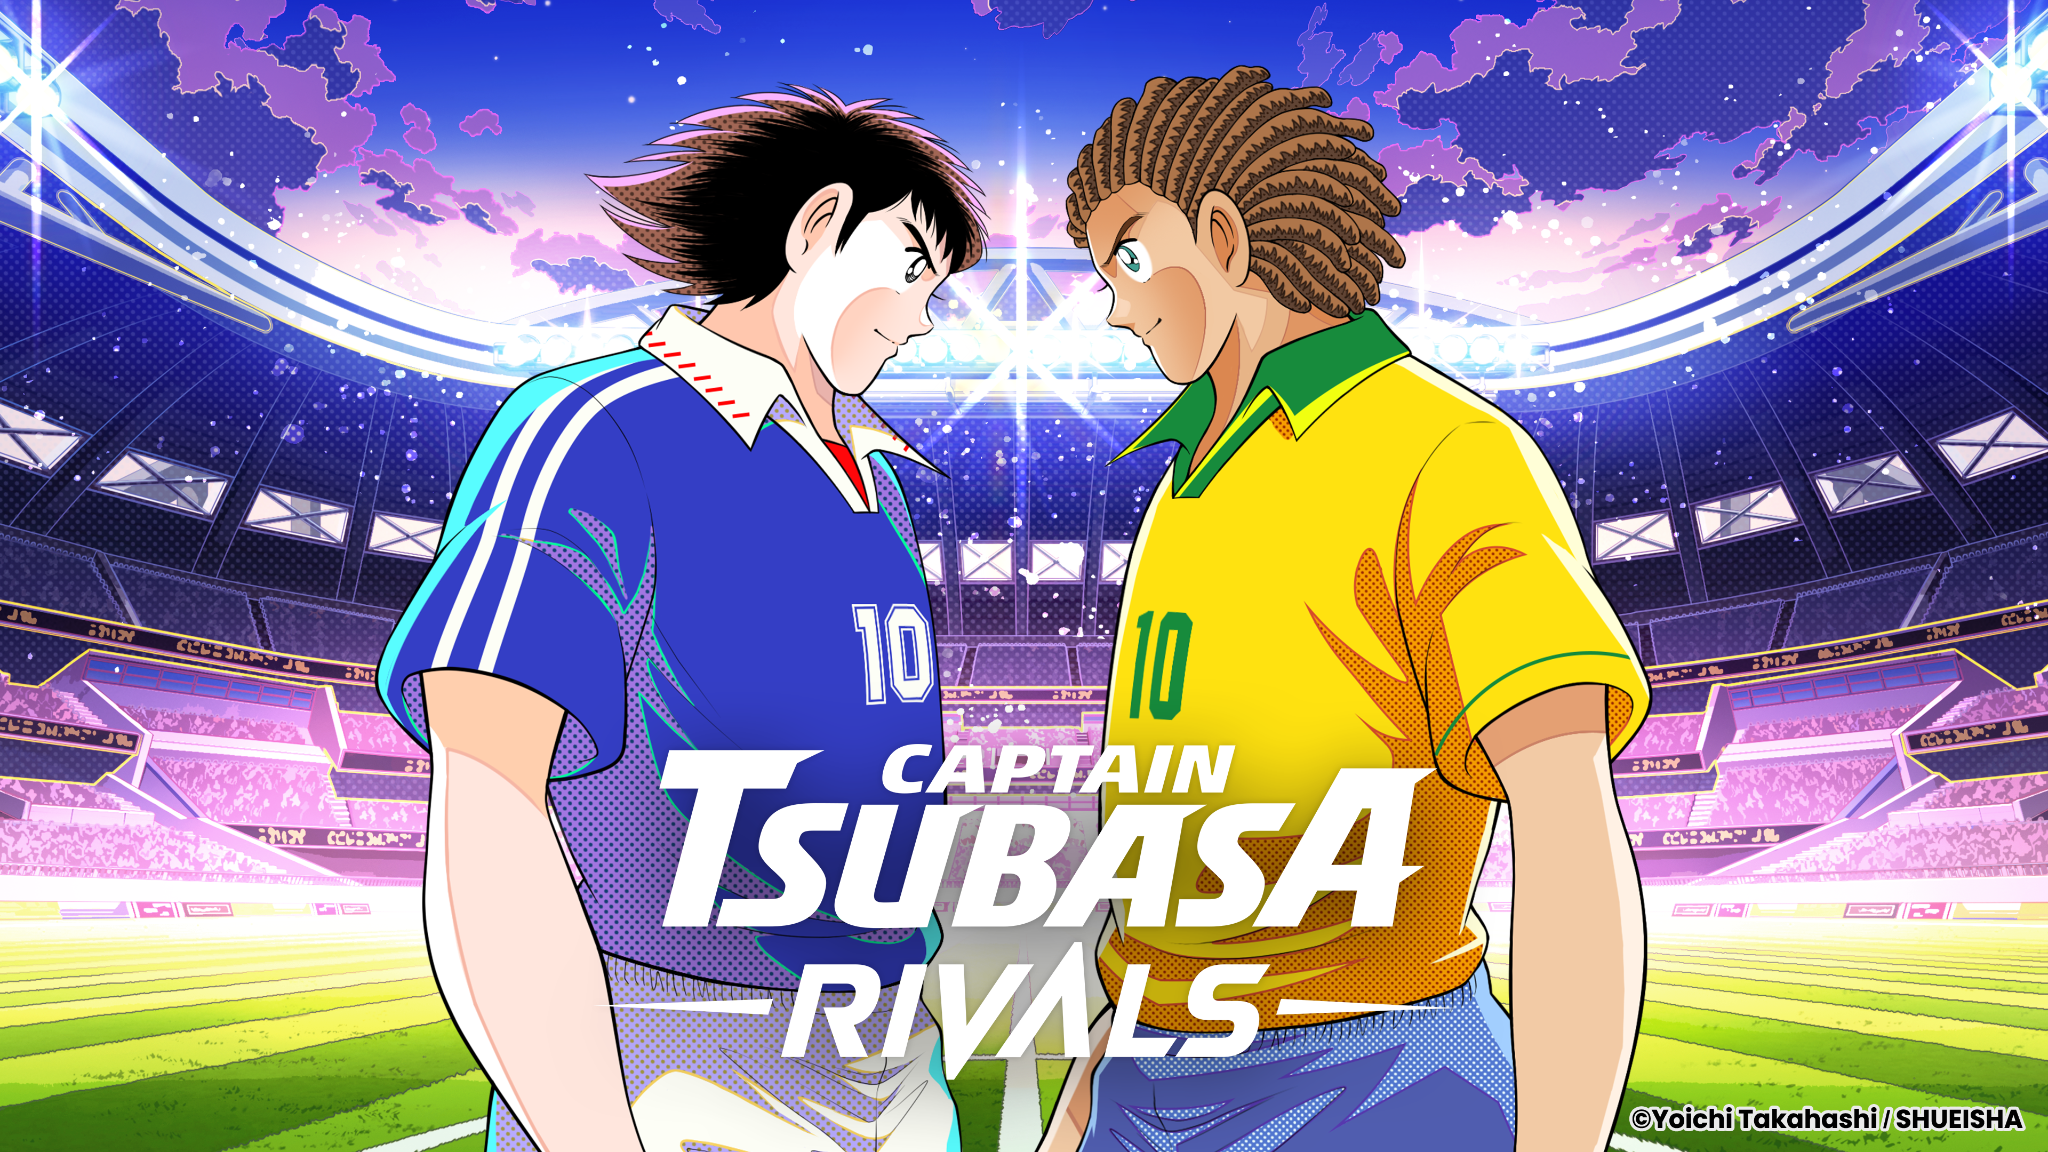 Captain Tsubasa - RIVALS.png